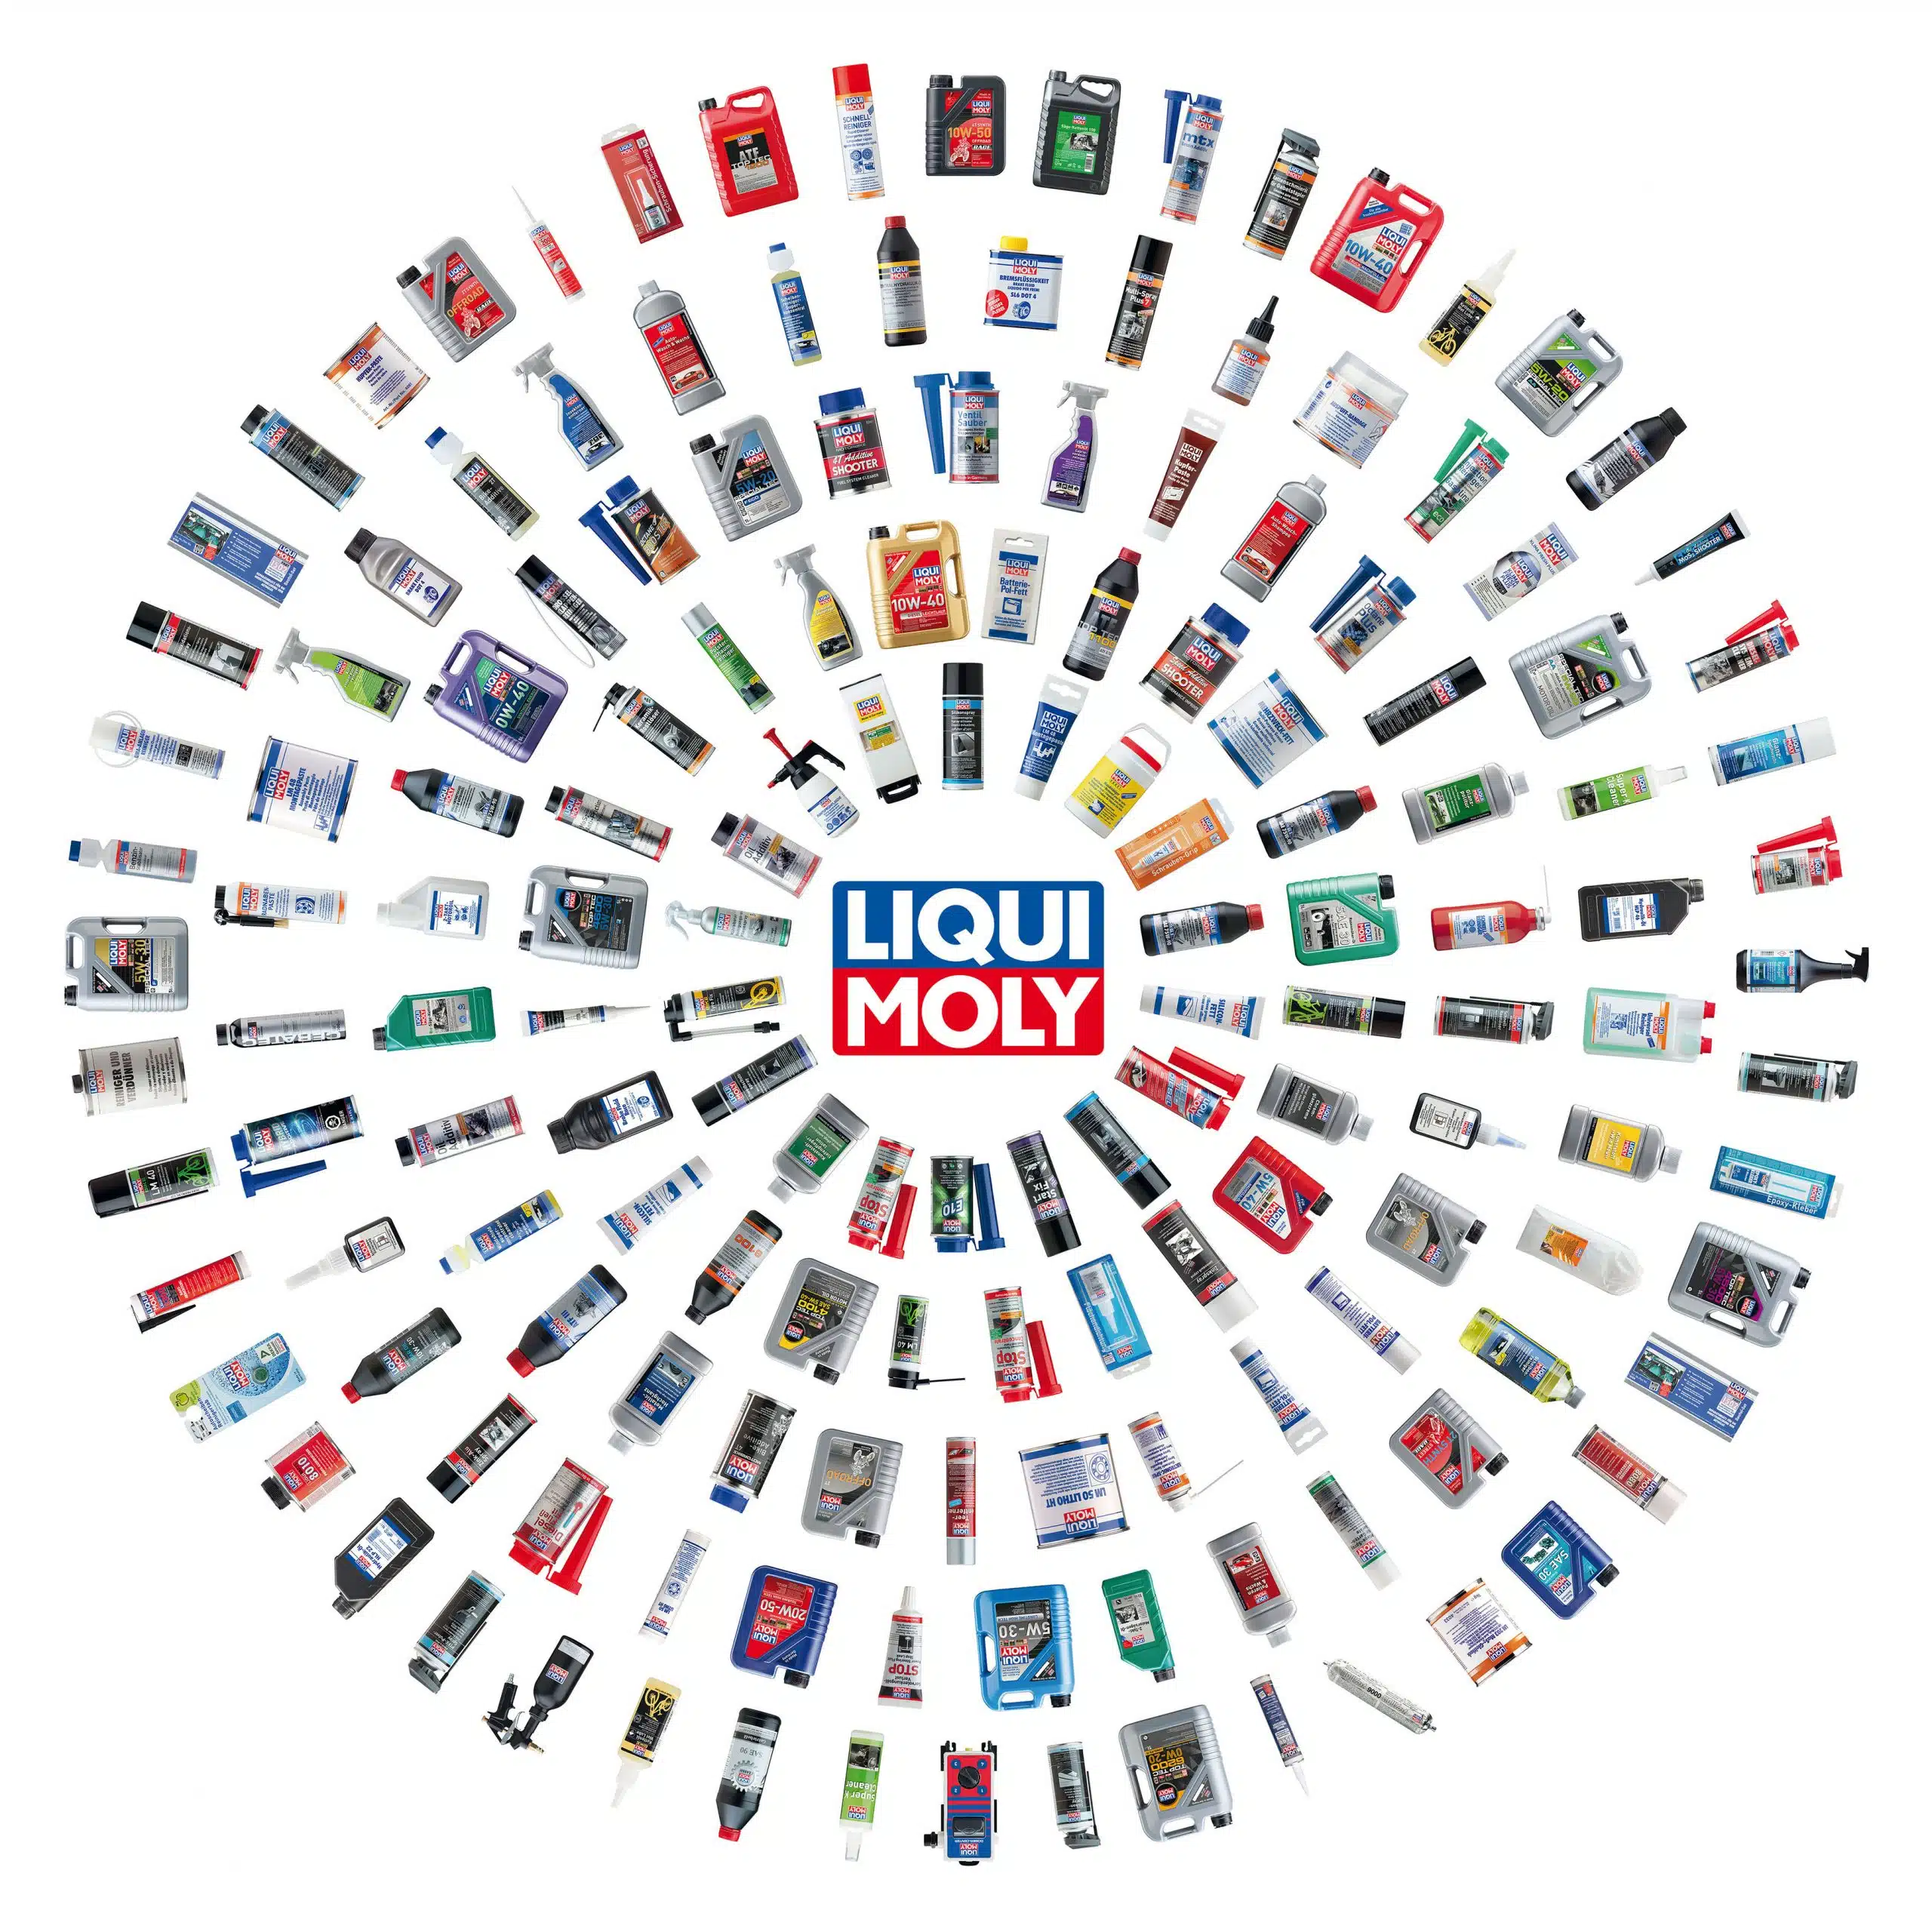 Liqui Moly offre plus de 4000 produits différents!